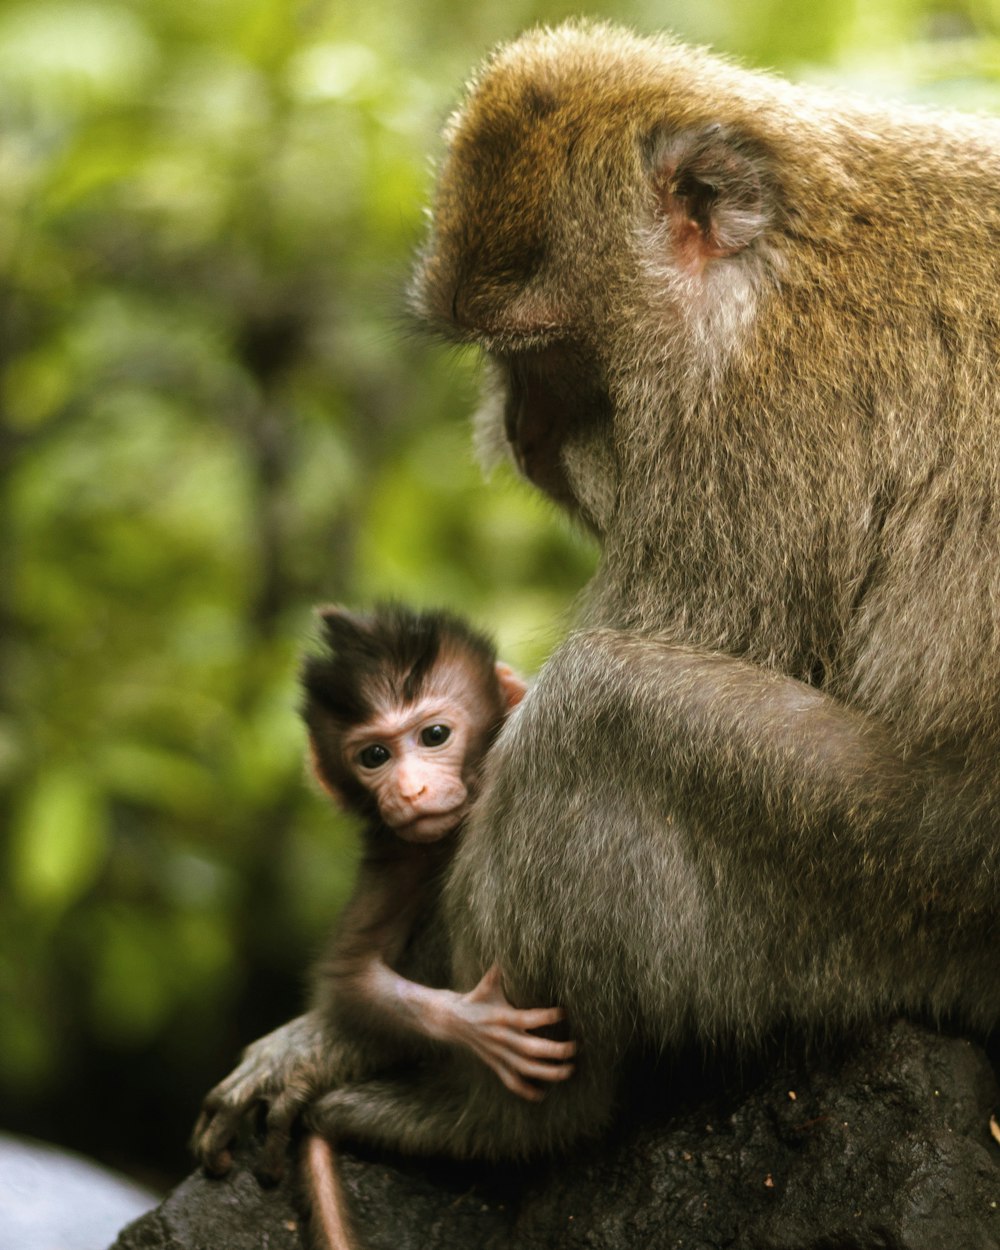 Gray Monkey Carrying Baby Monkey During Daytime Photo Free Monkey Image On Unsplash